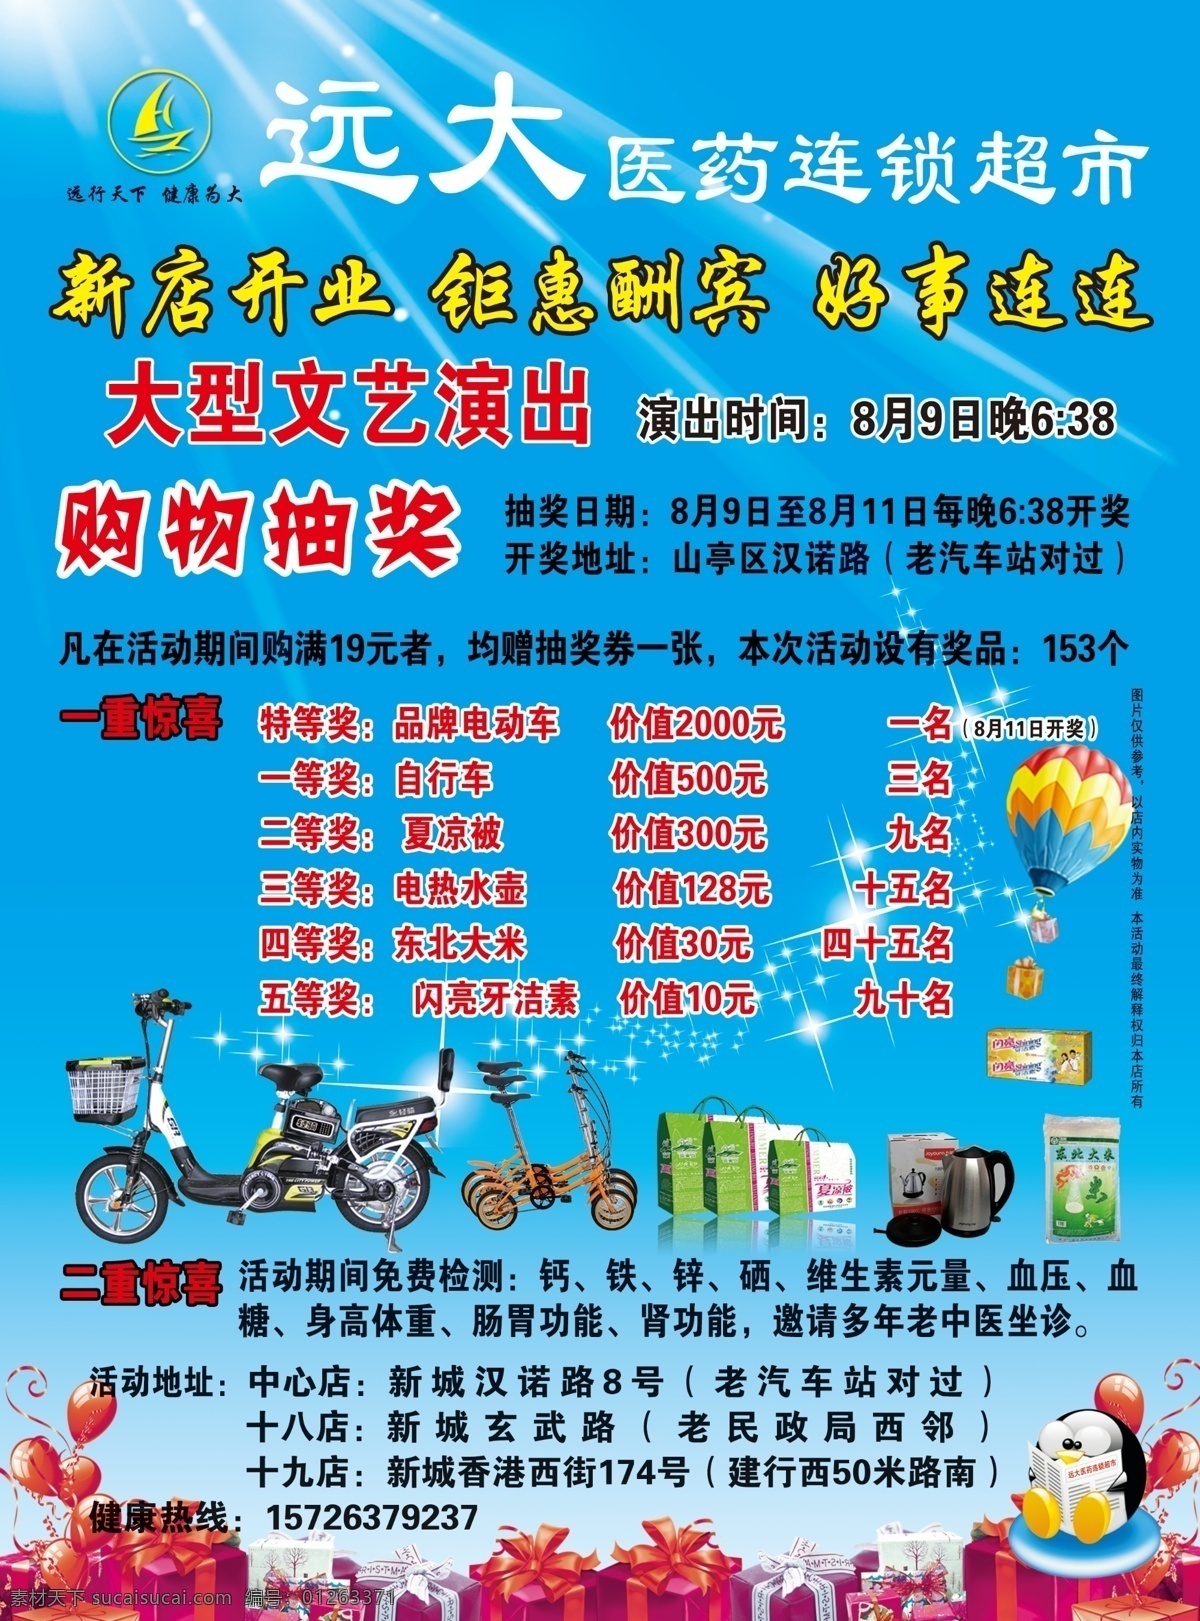 药店彩页 医药超市 药店宣传单 电动车 自行车 300 分辨率 dm宣传单 广告设计模板 源文件